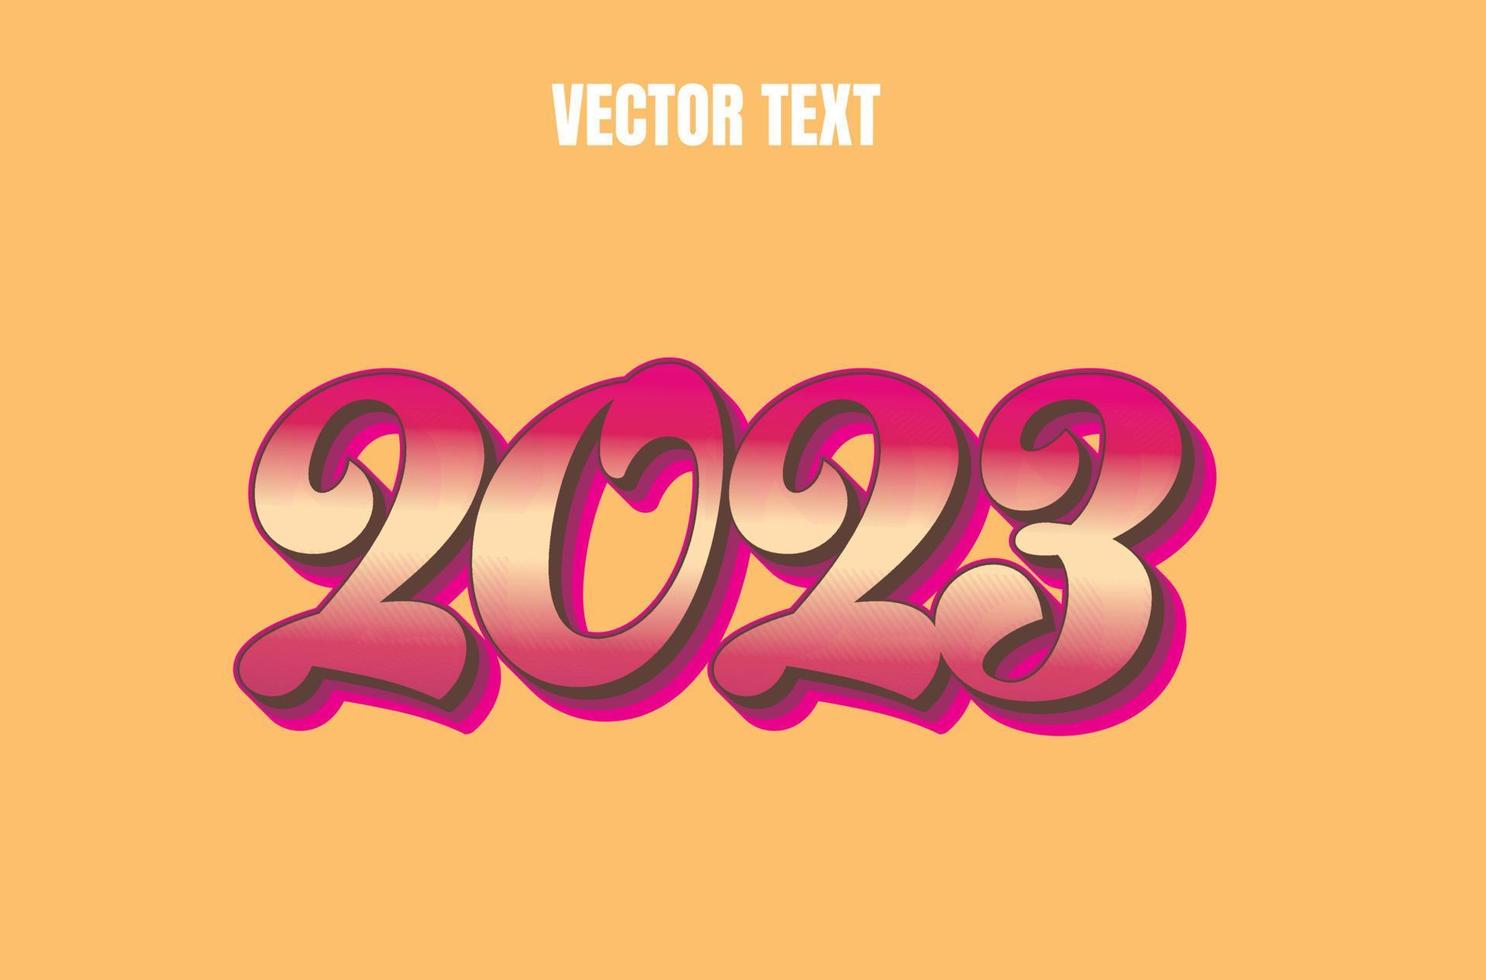 efeito de texto vetorial editável 2023 vetor